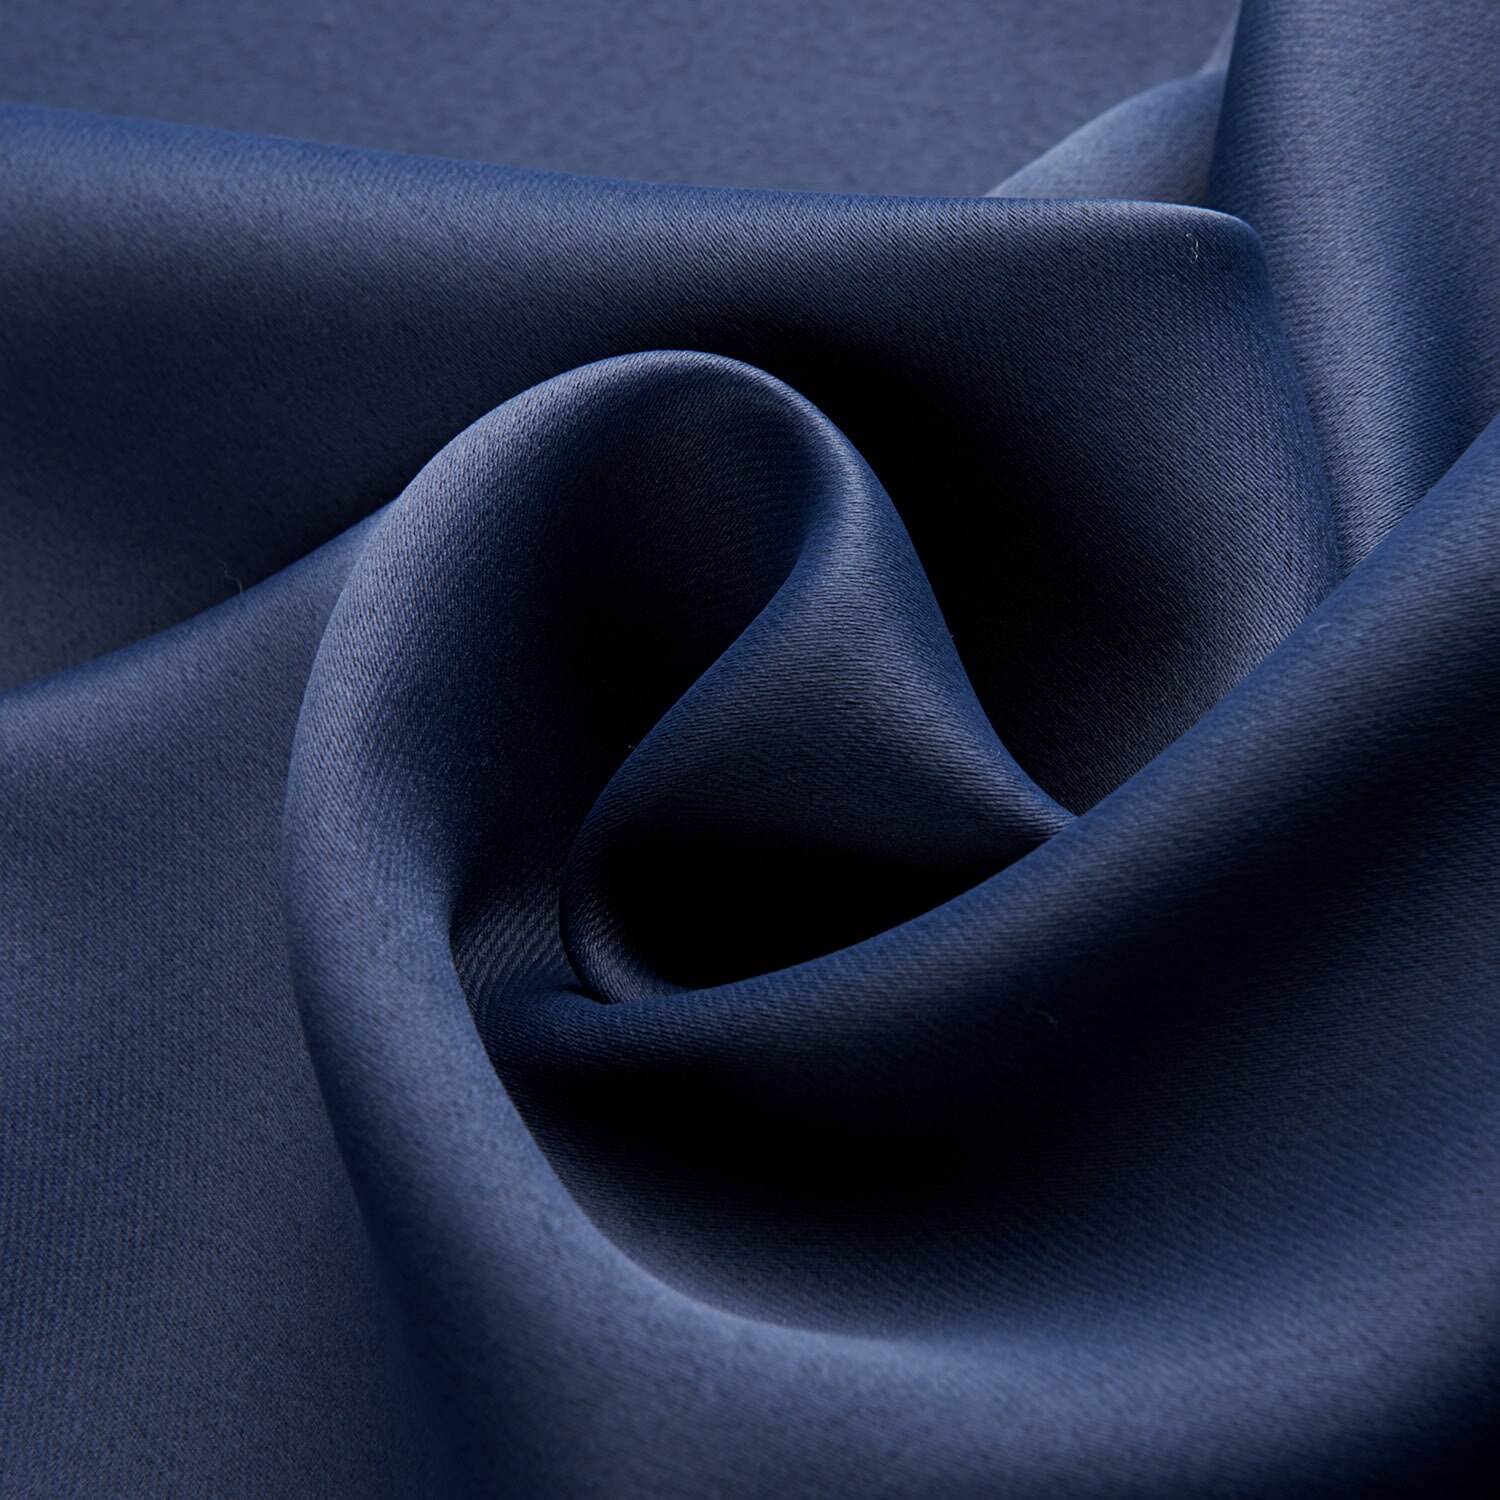 Ren farve gardin mørkeblå soveværelse skygge klud gardin bløde husholdningsartikler hjem tekstilprodukter